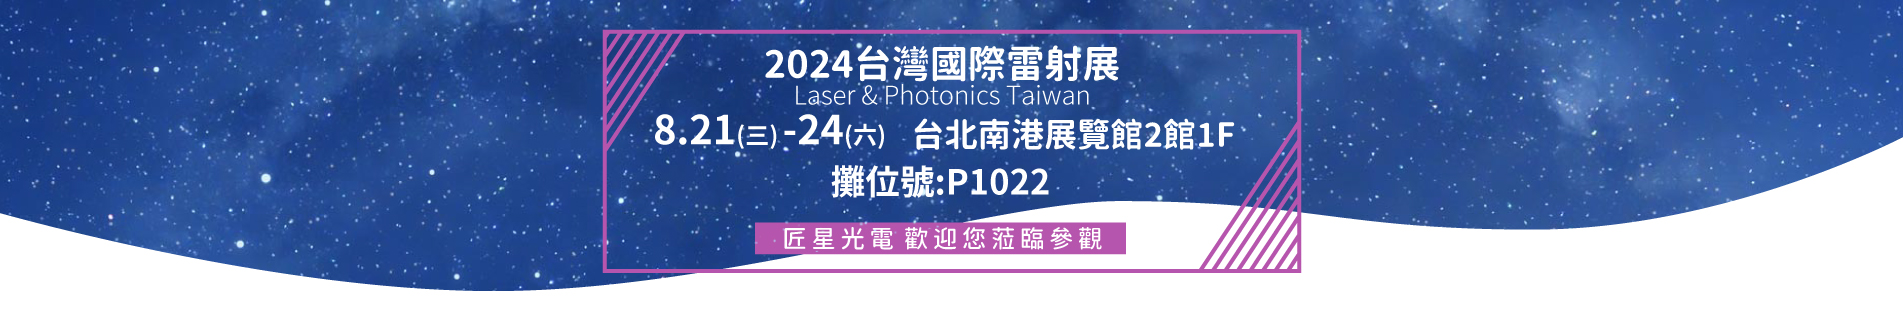 2024台灣國際雷射展